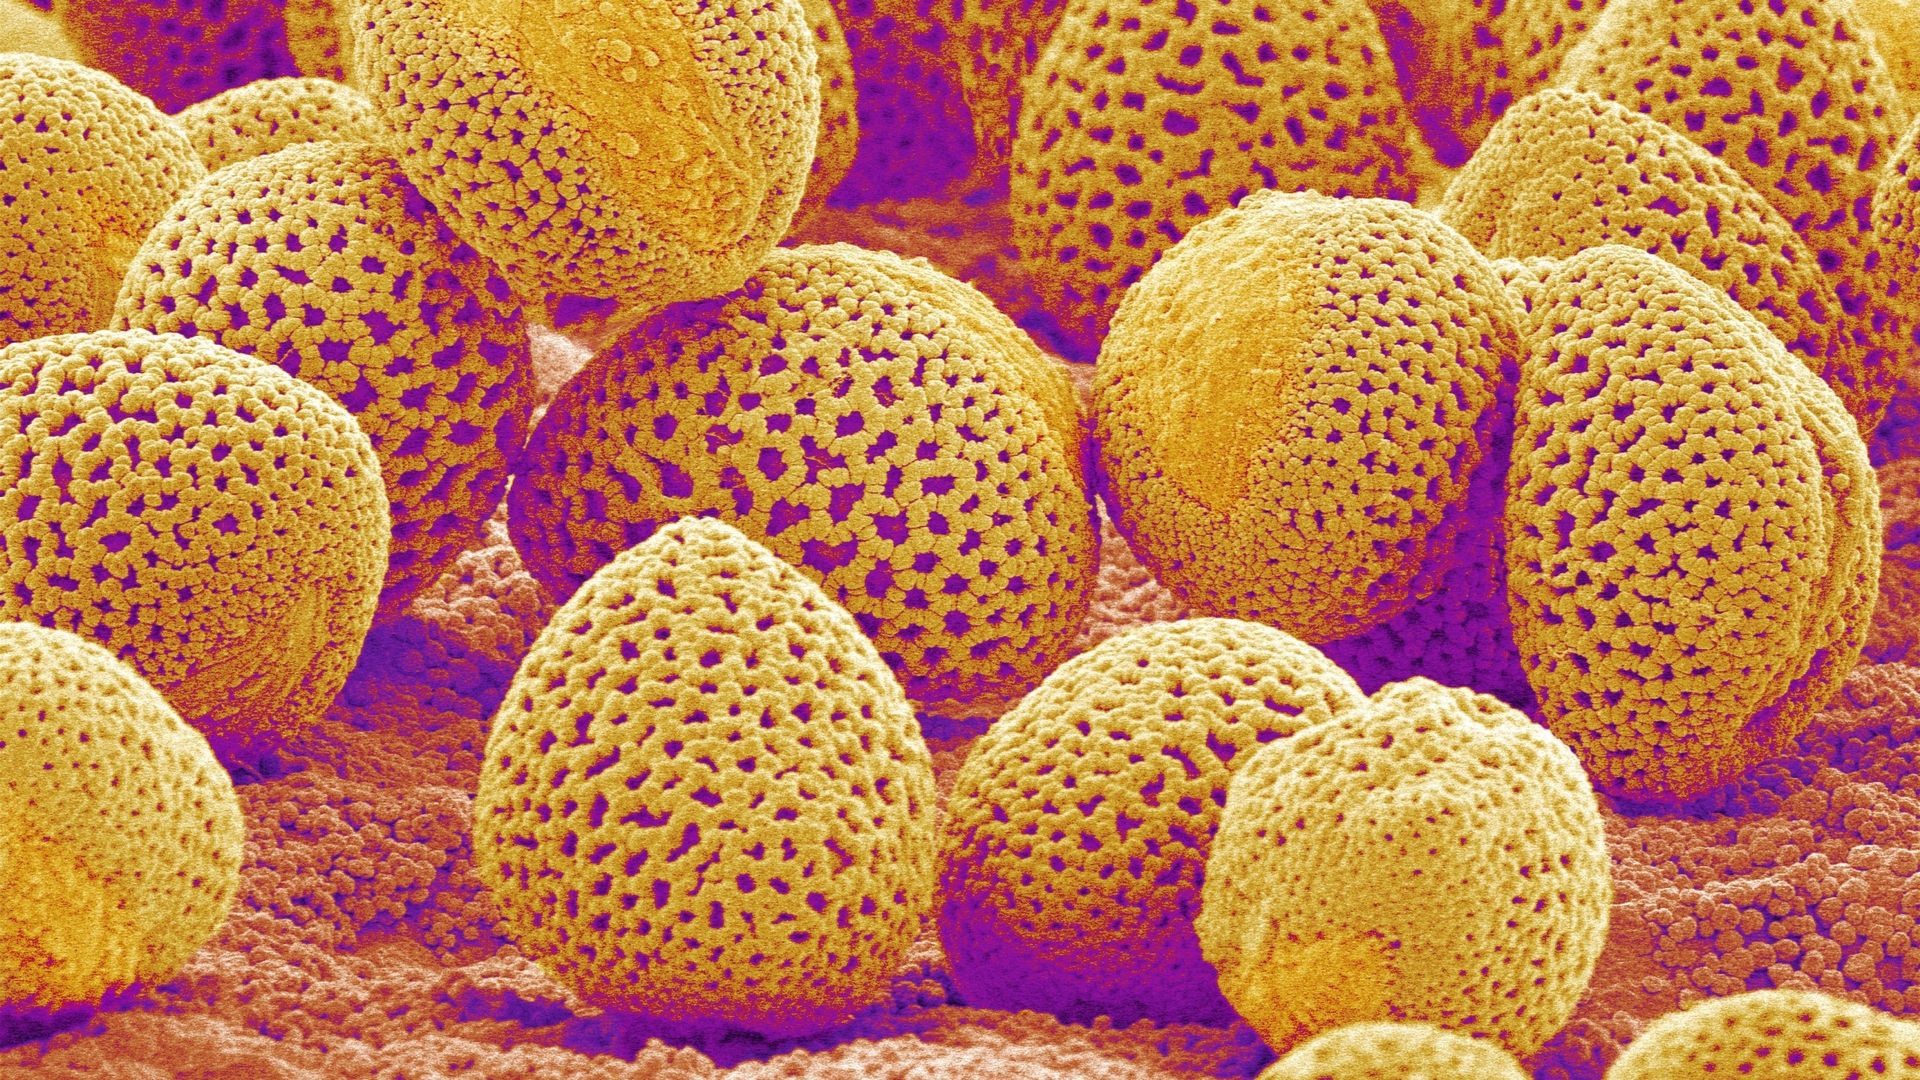 Les bienfaits du pollen - Apiculteur depuis 1921